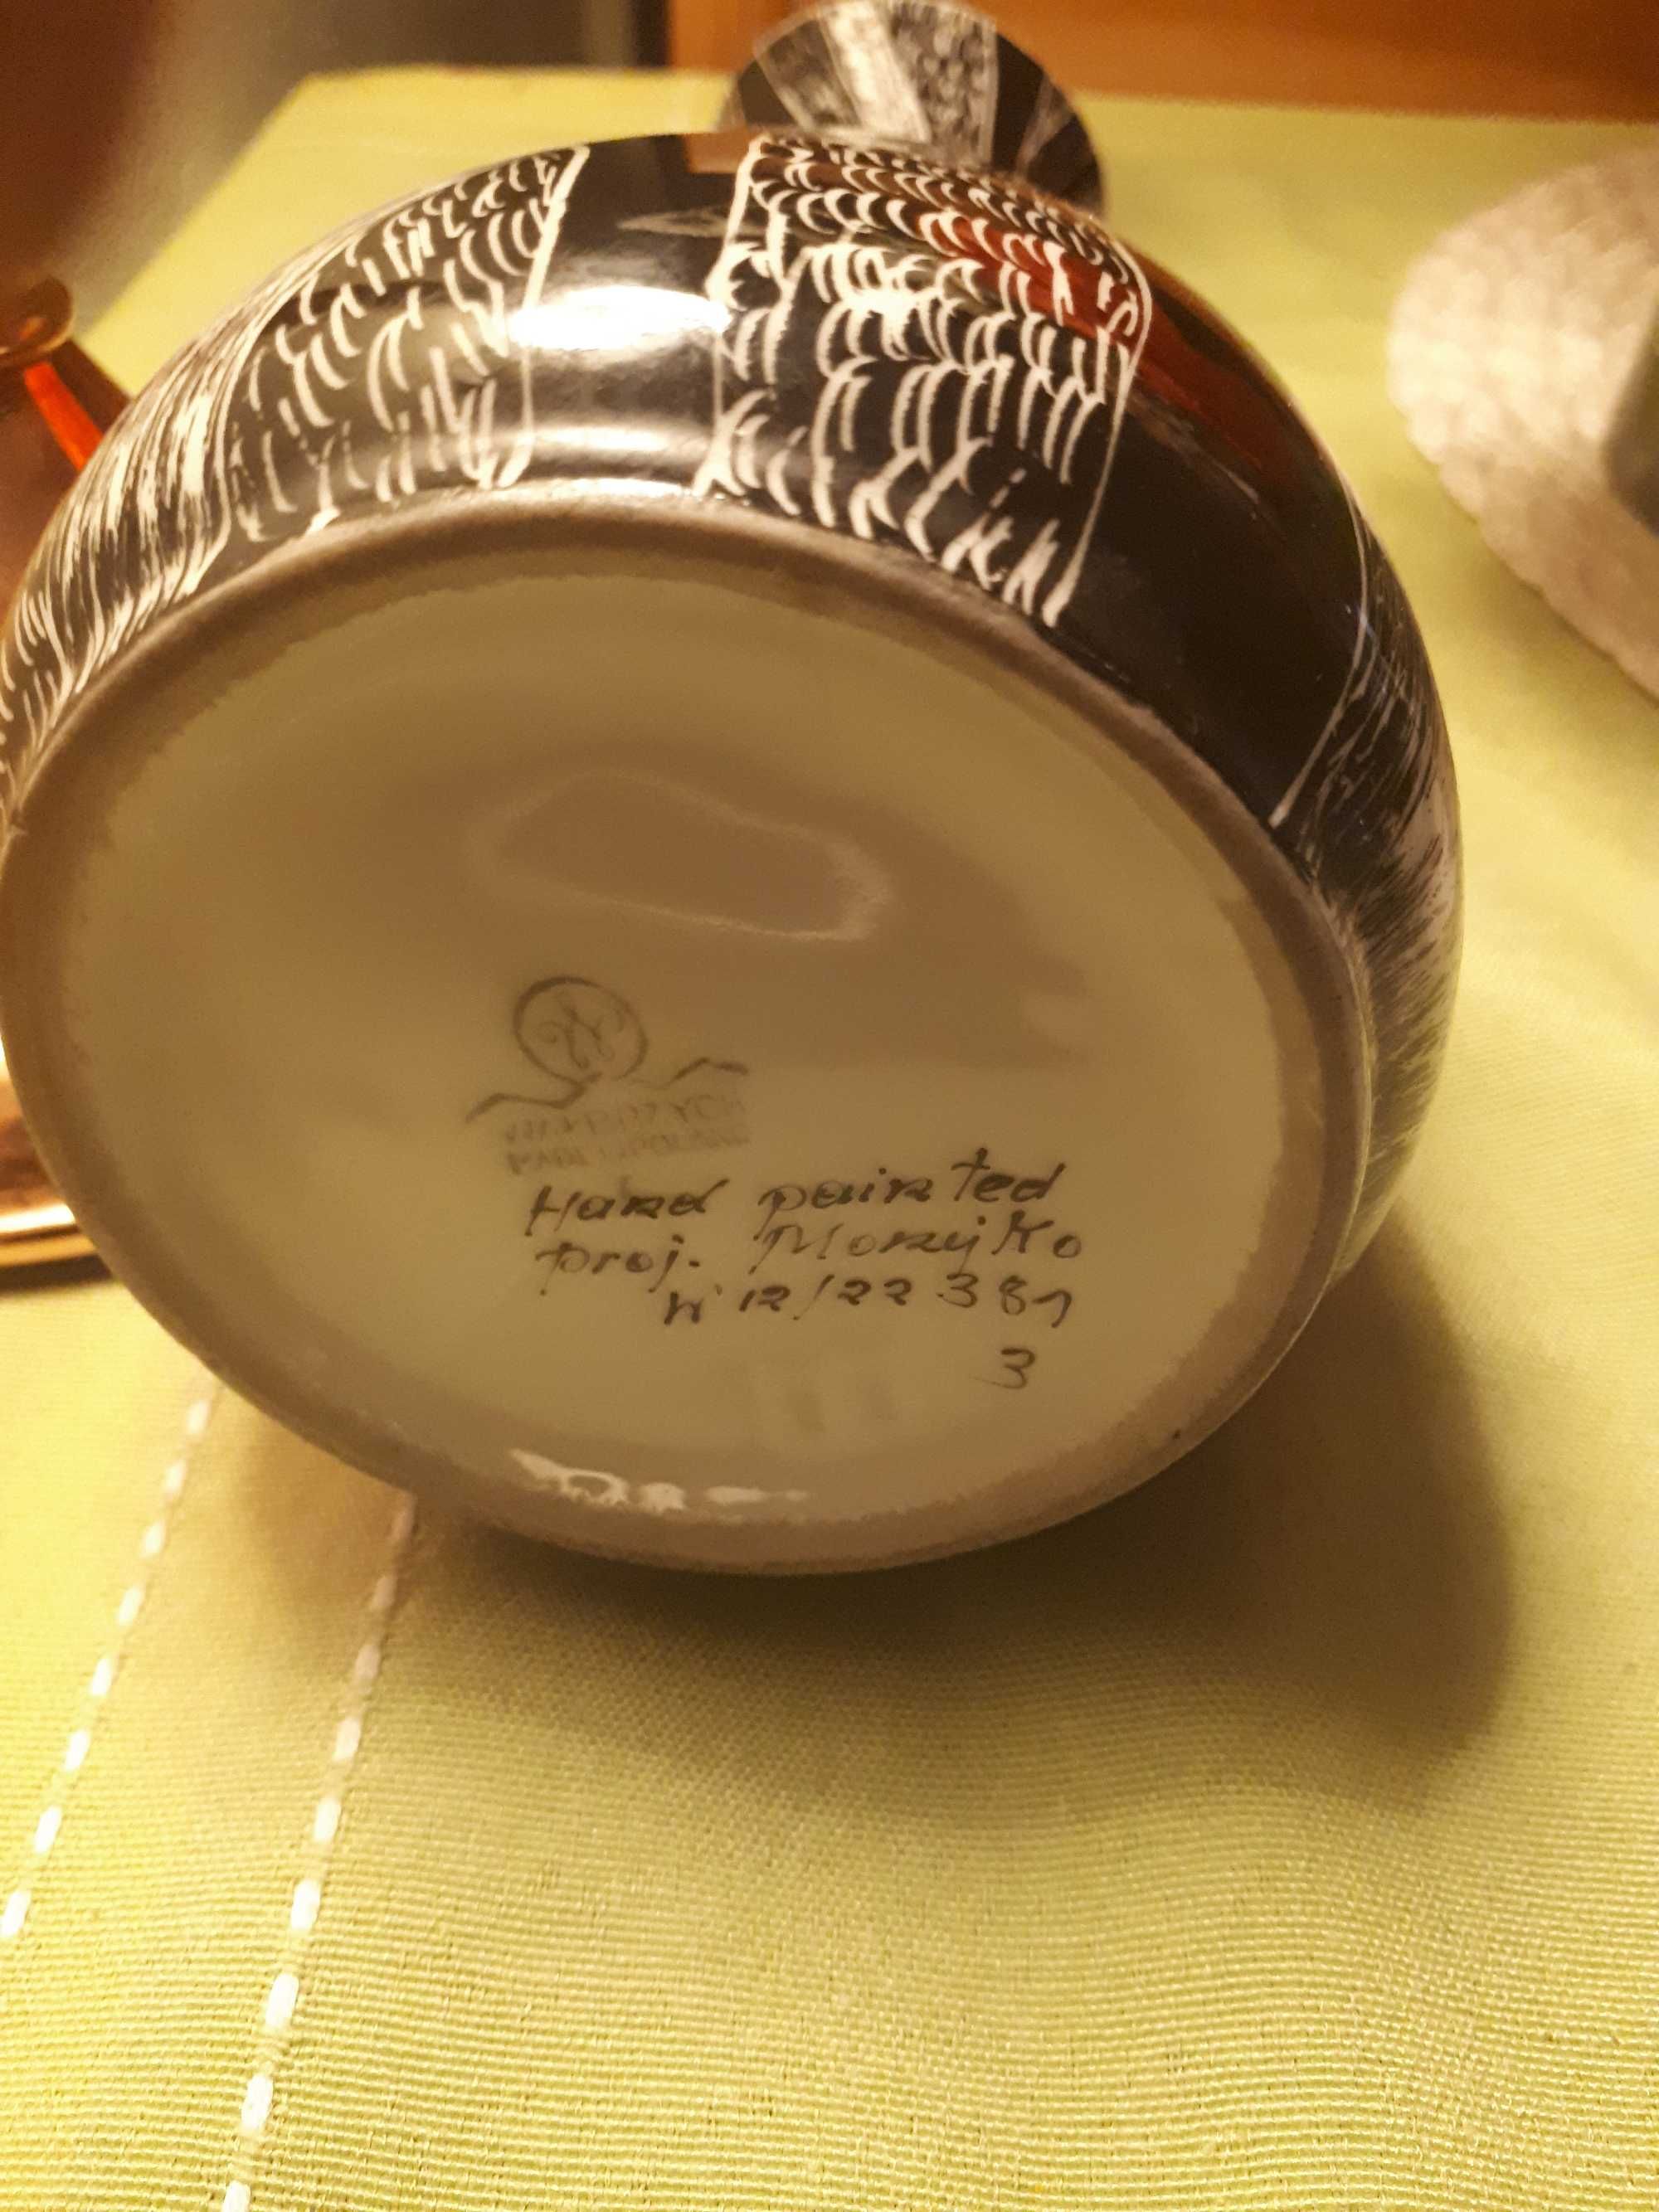 Unikatowy wazon porcelanowy kolekcjonerski "Świt" Morzejko, Wałbrzych.